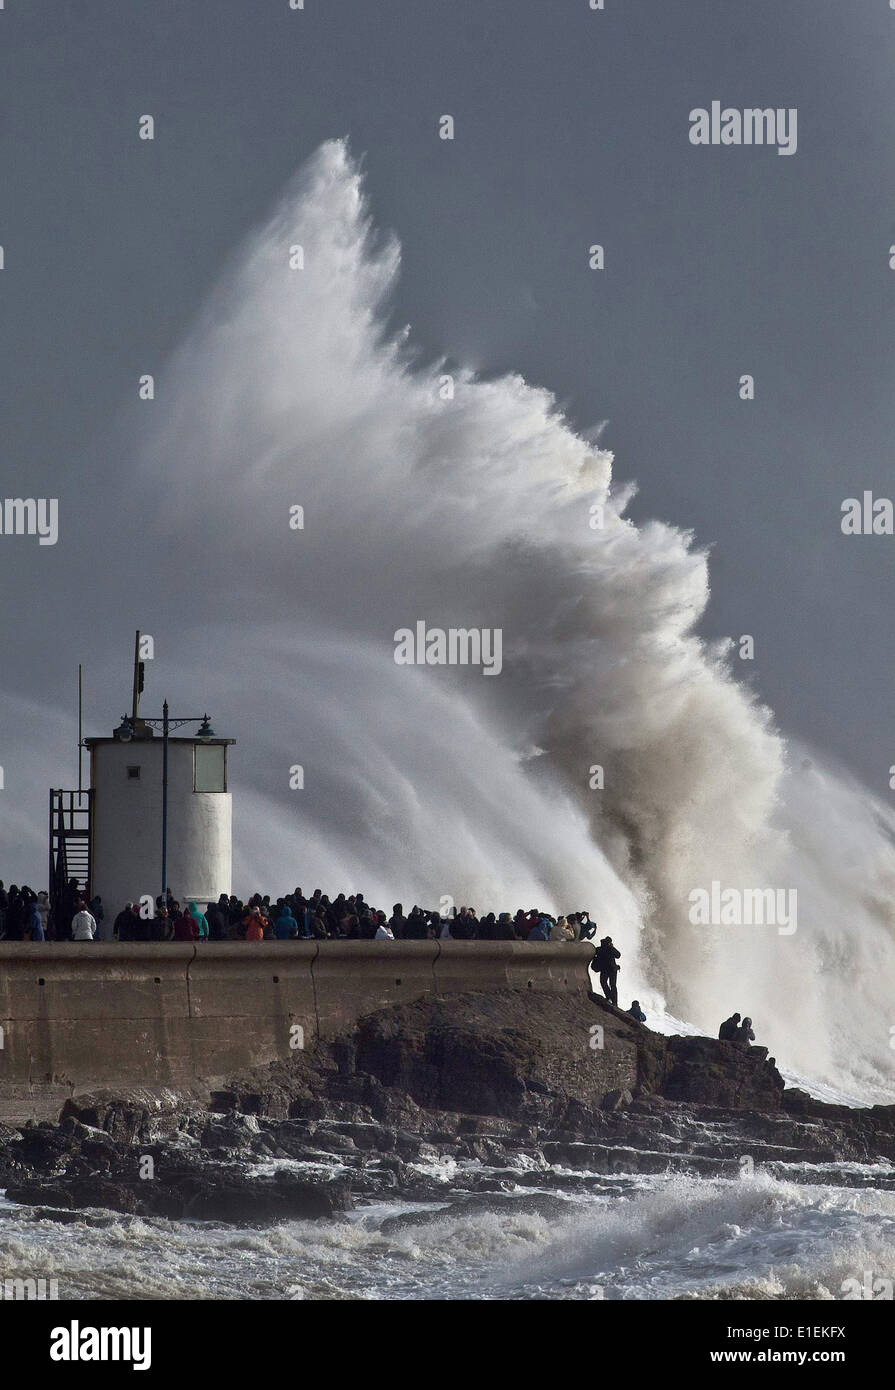 Dutzende von Menschen packen die Ufermauer in Porthcawl in Süd-Wales, die massiven Wellen schlagen den Leuchtturm zu sehen Stockfoto